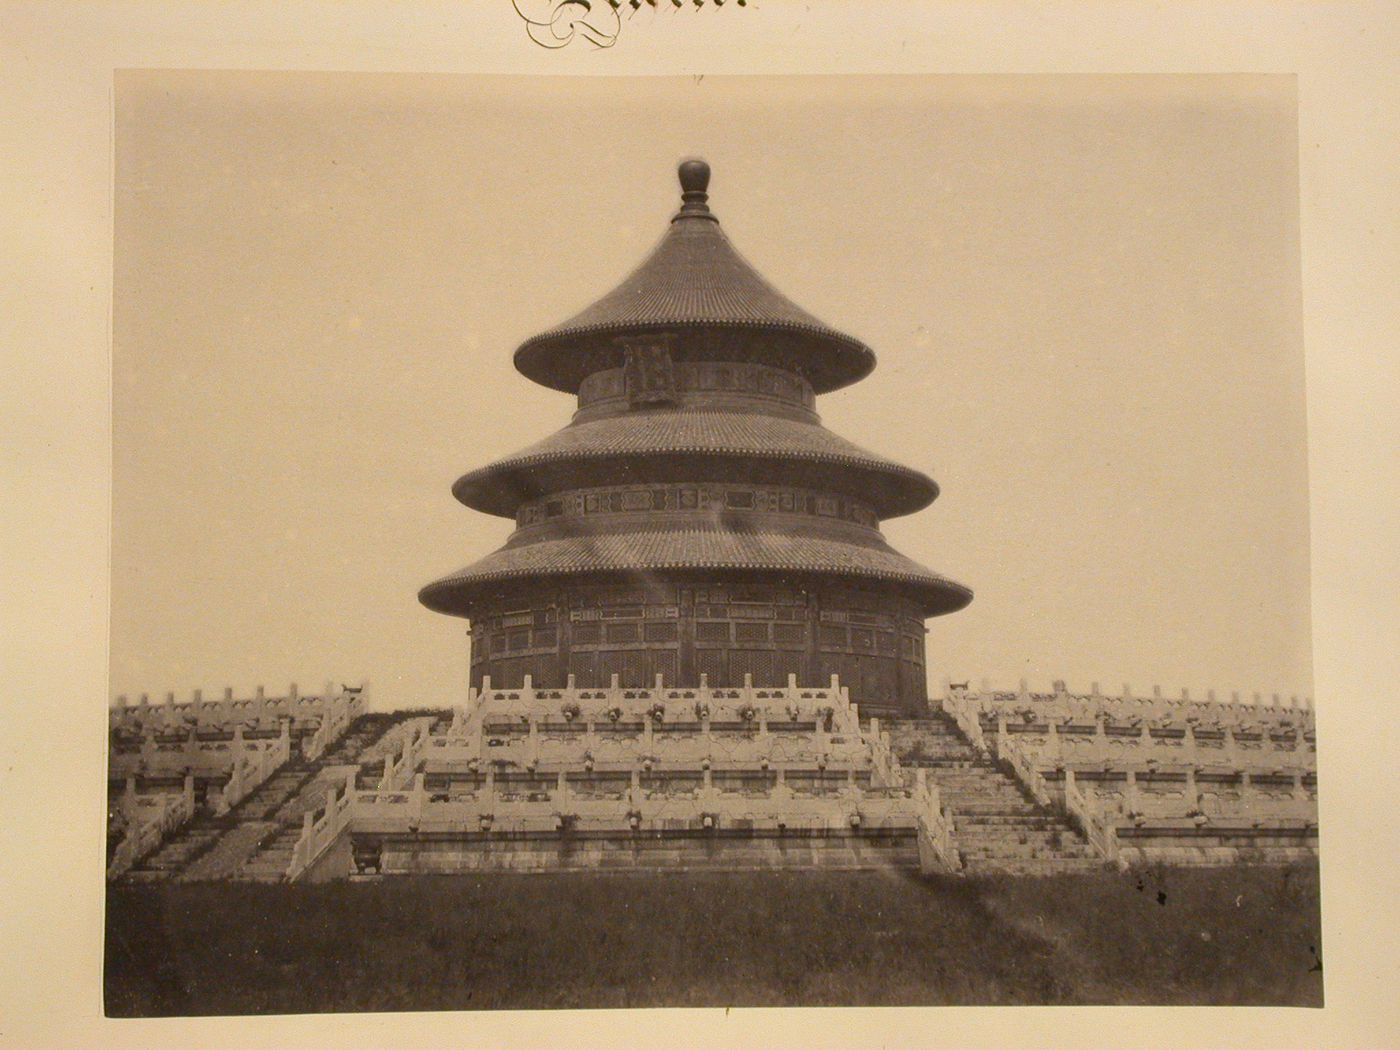 View of the Temple of Heaven [Tian Tan], Peking (now Beijing), China